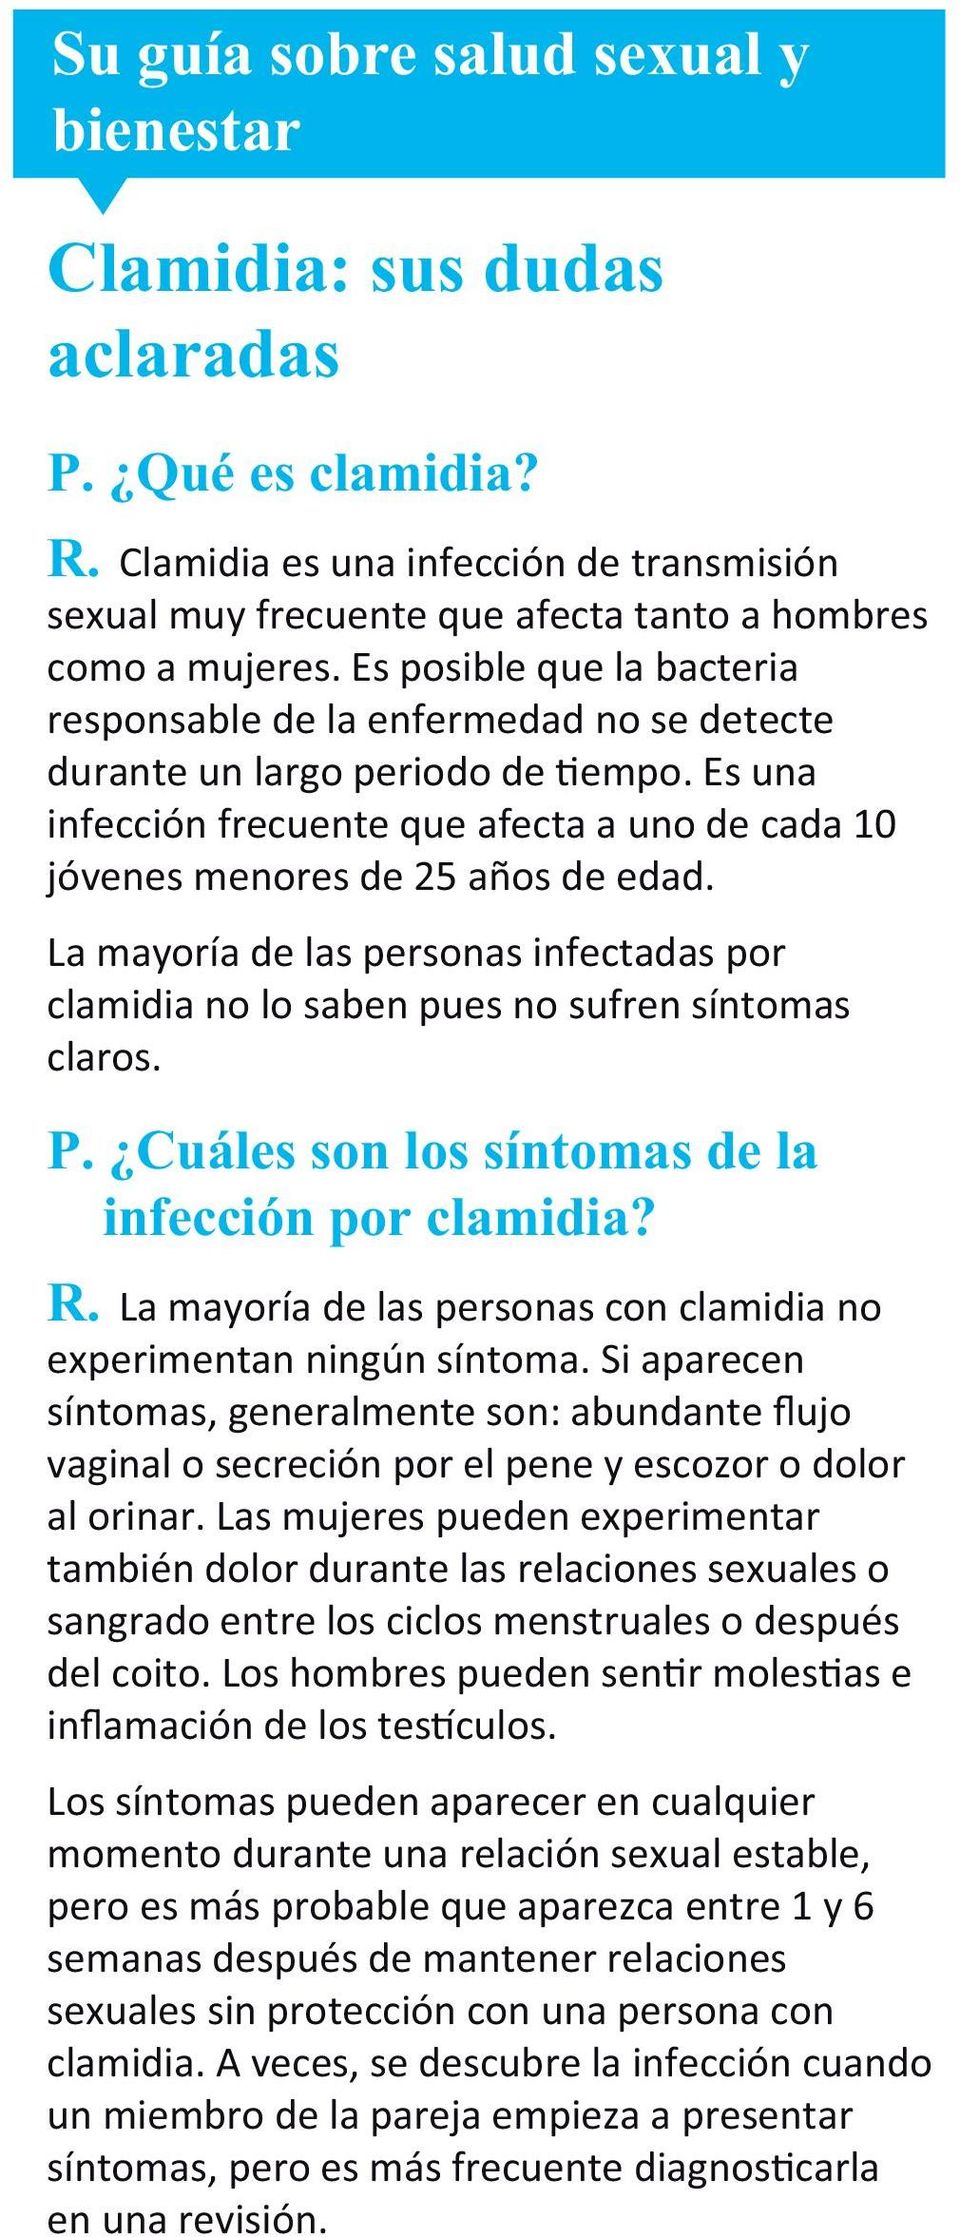 La mayoría de las personas infectadas por clamidia no lo saben pues no sufren síntomas claros. P. Cuáles son los síntomas de la infección por clamidia? R.